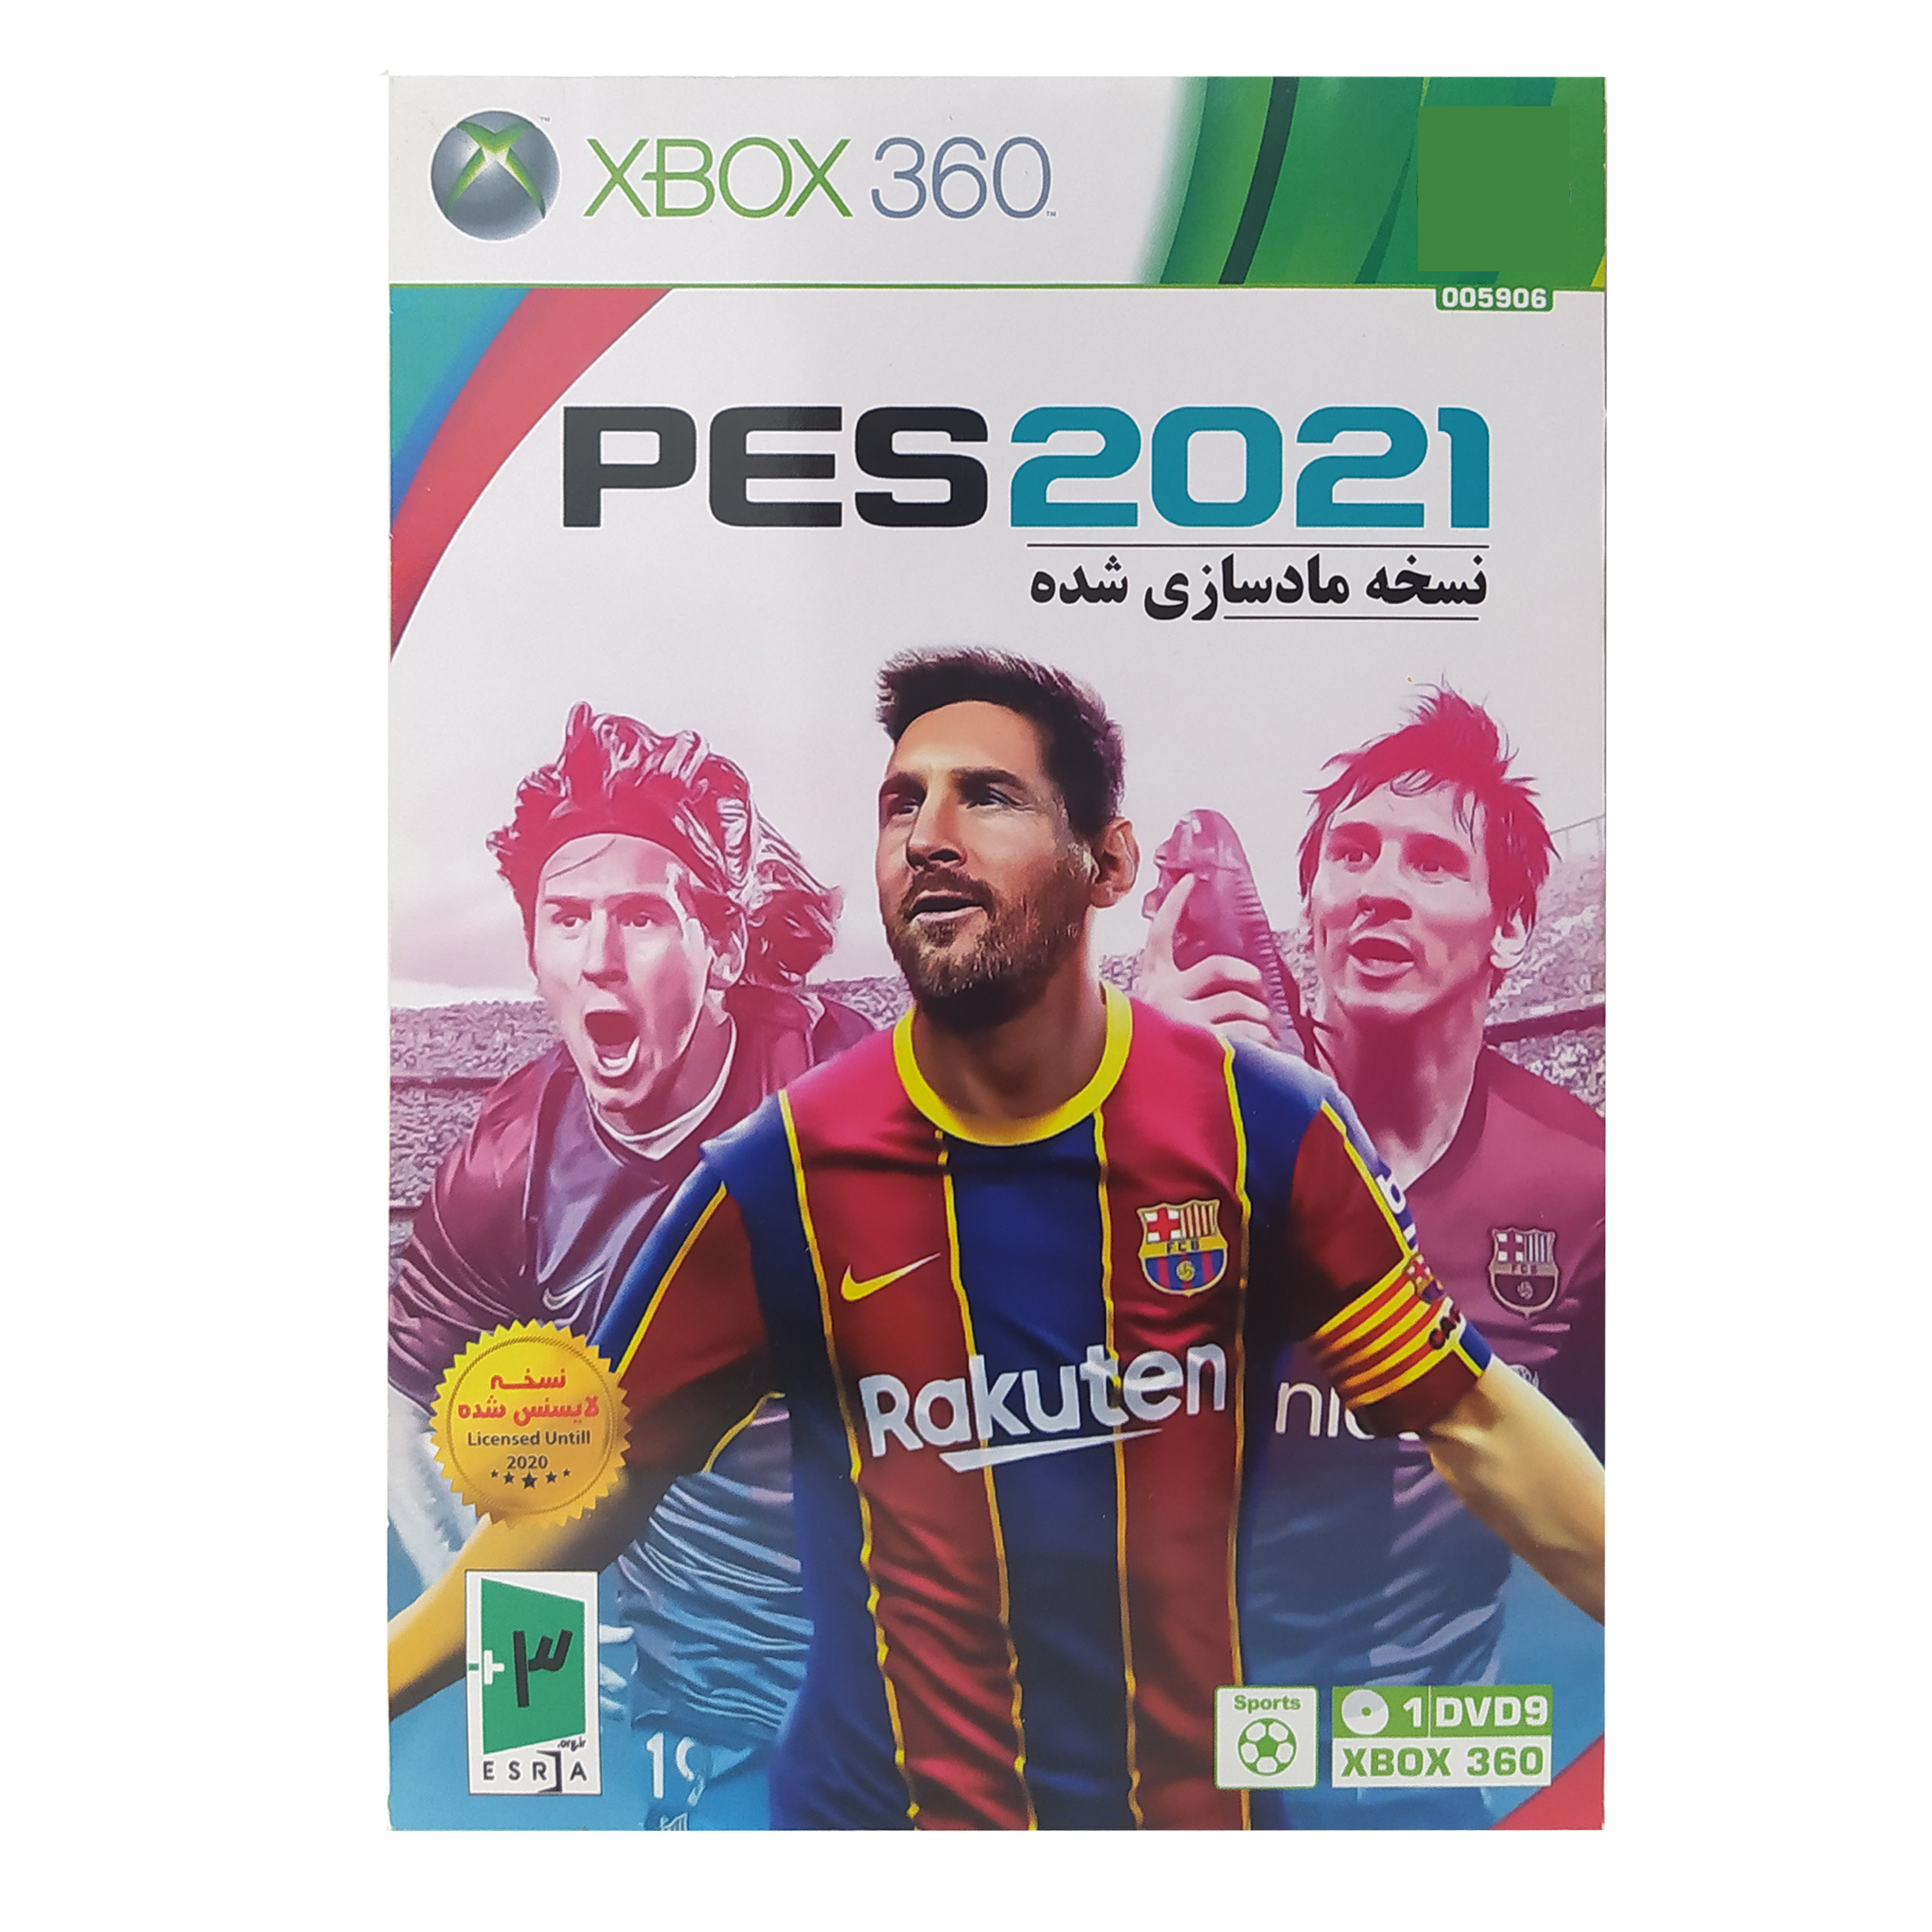 بازی PES 2021 مخصوص XBOX 360 نسخه مادسازی شده